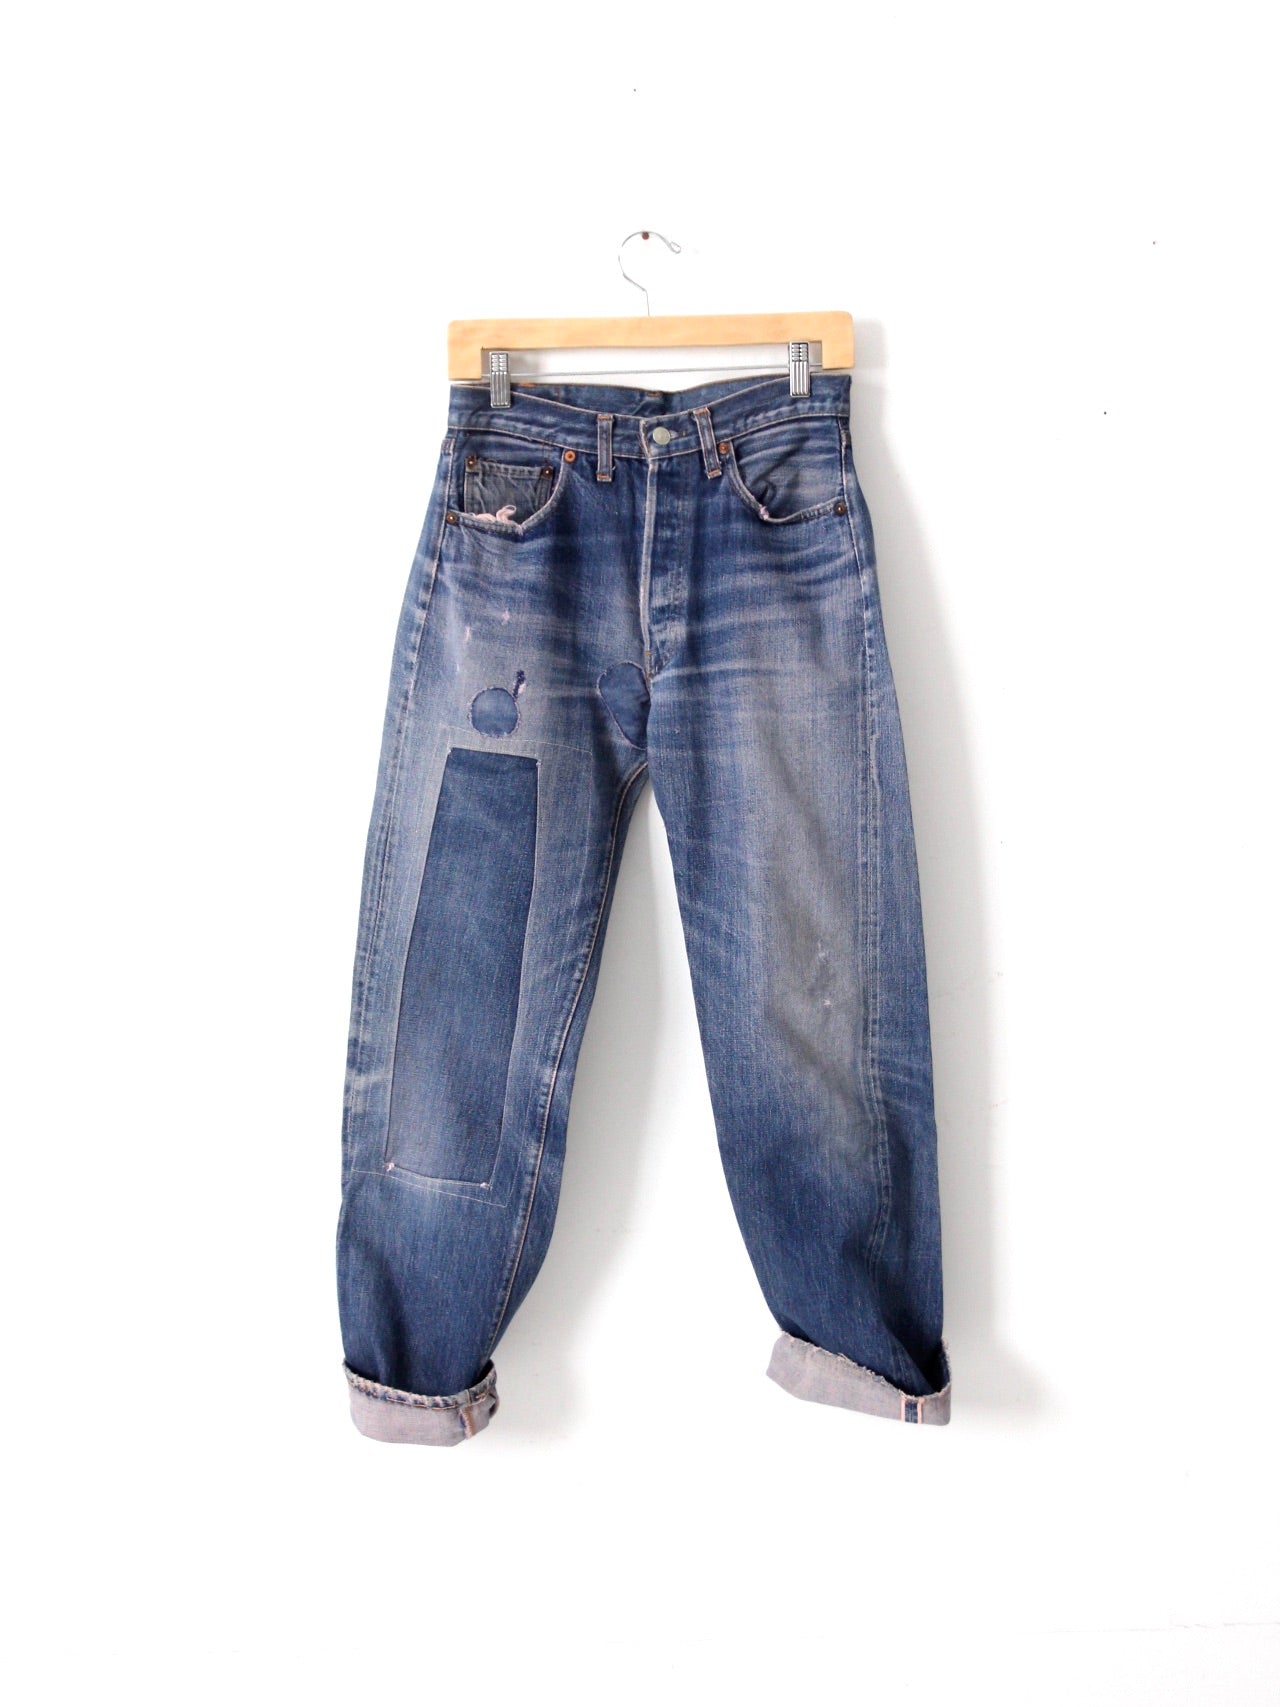 vintage patched Levi's 501 Big E jeans 29 x 29 – 86 Vintage